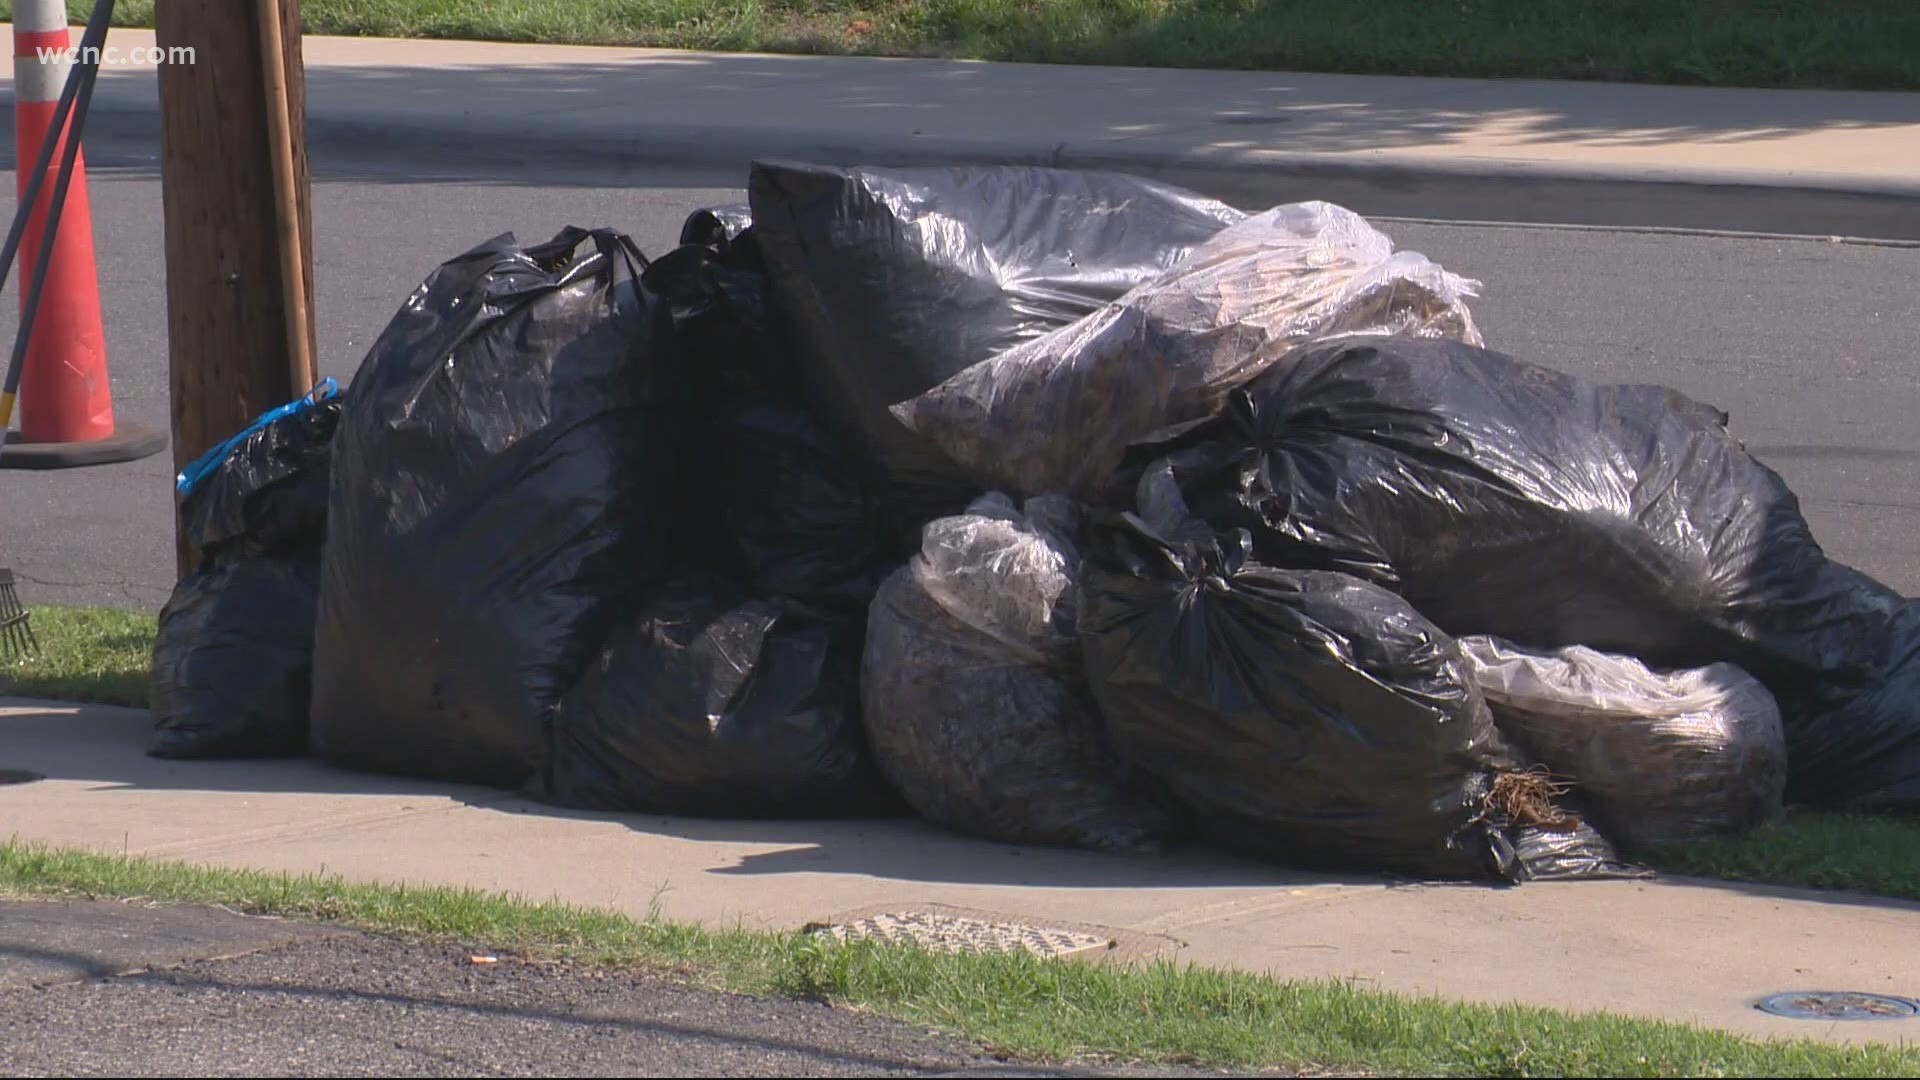 Charlotte enforcing paper bag mandate for yard waste